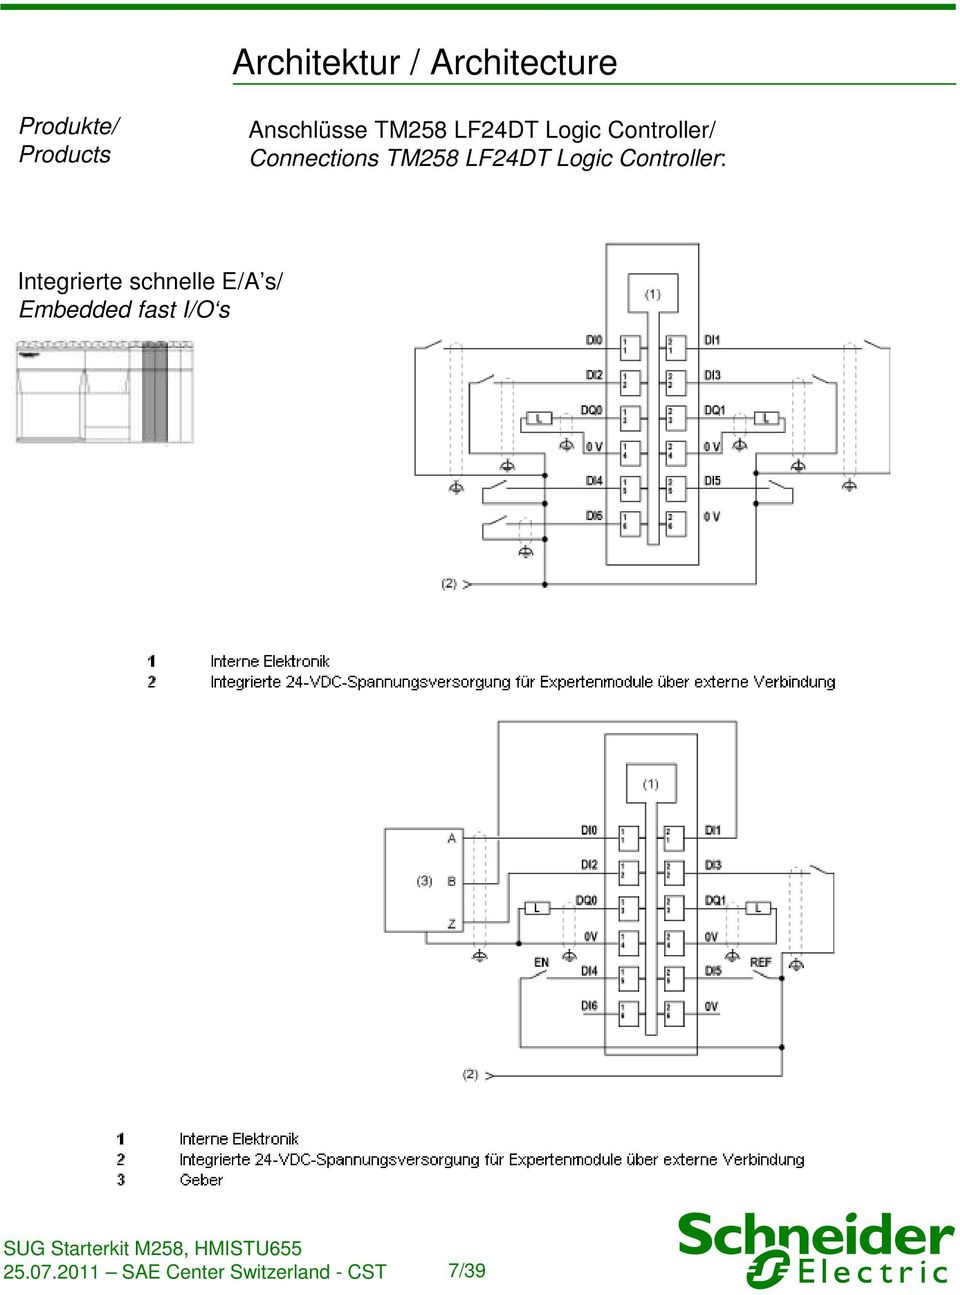 TM258 LF24DT Logic Controller: Integrierte schnelle E/A